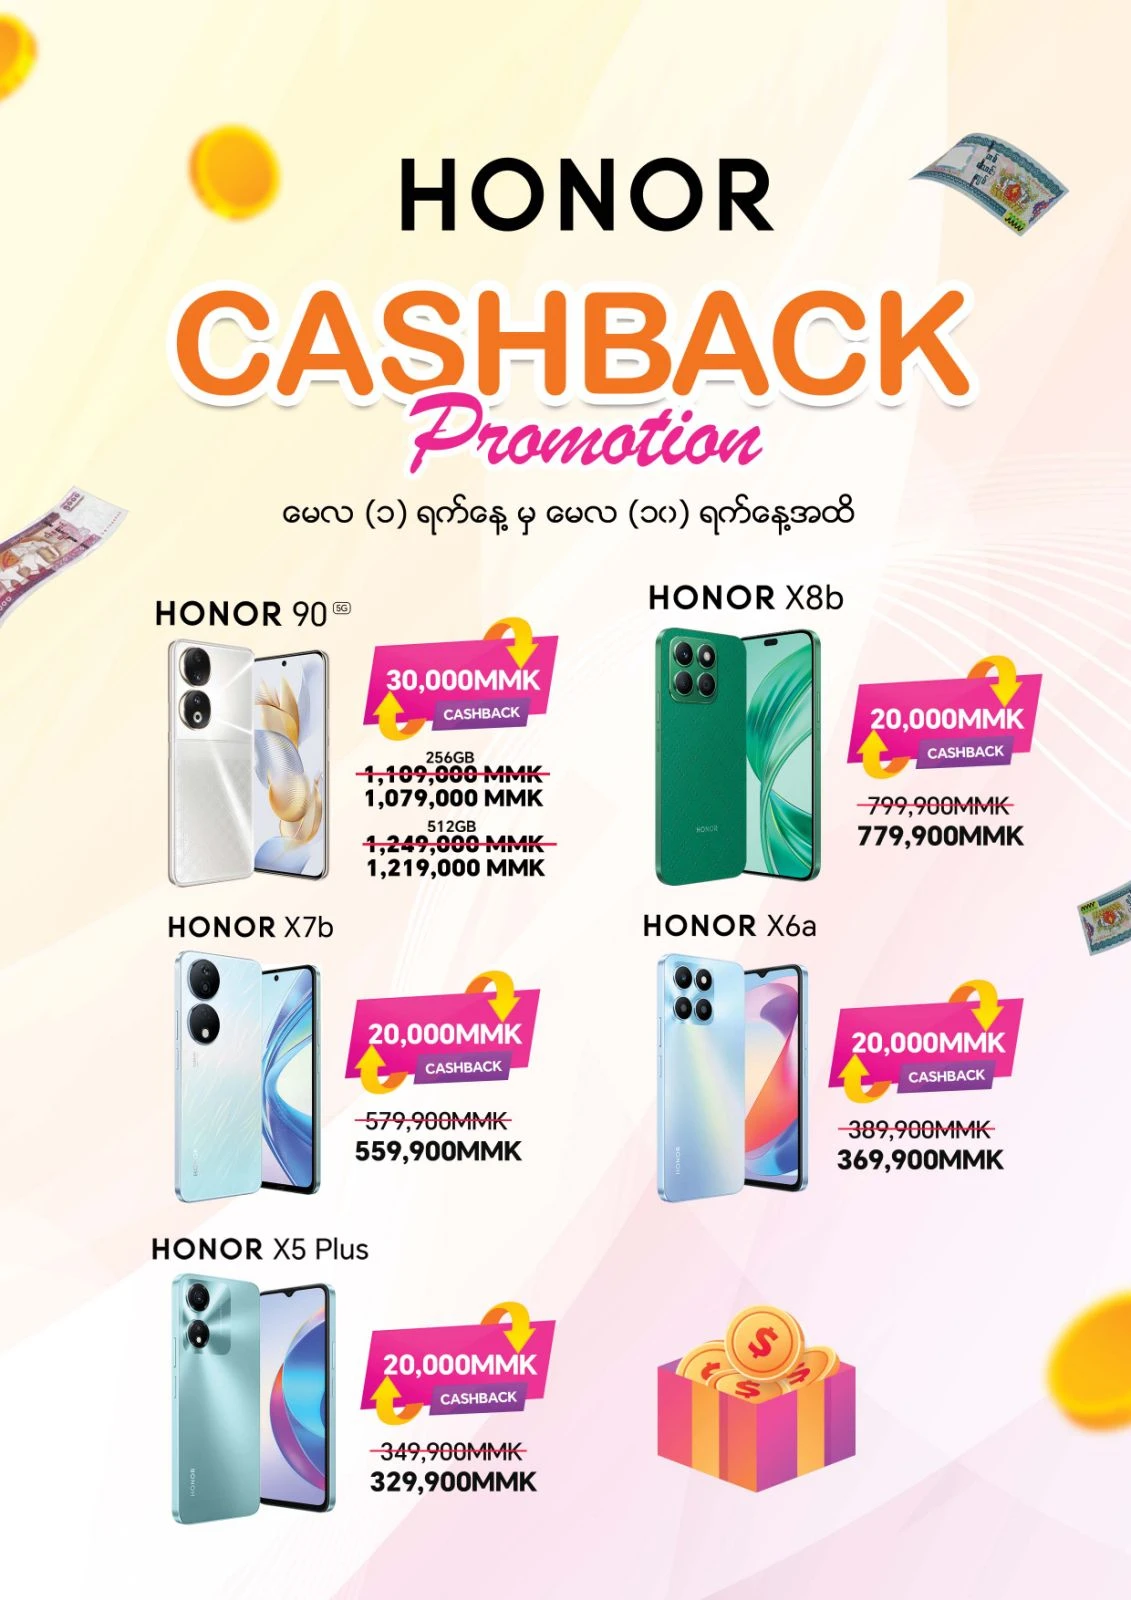 HONOR Cashback (May 1 - May 10)